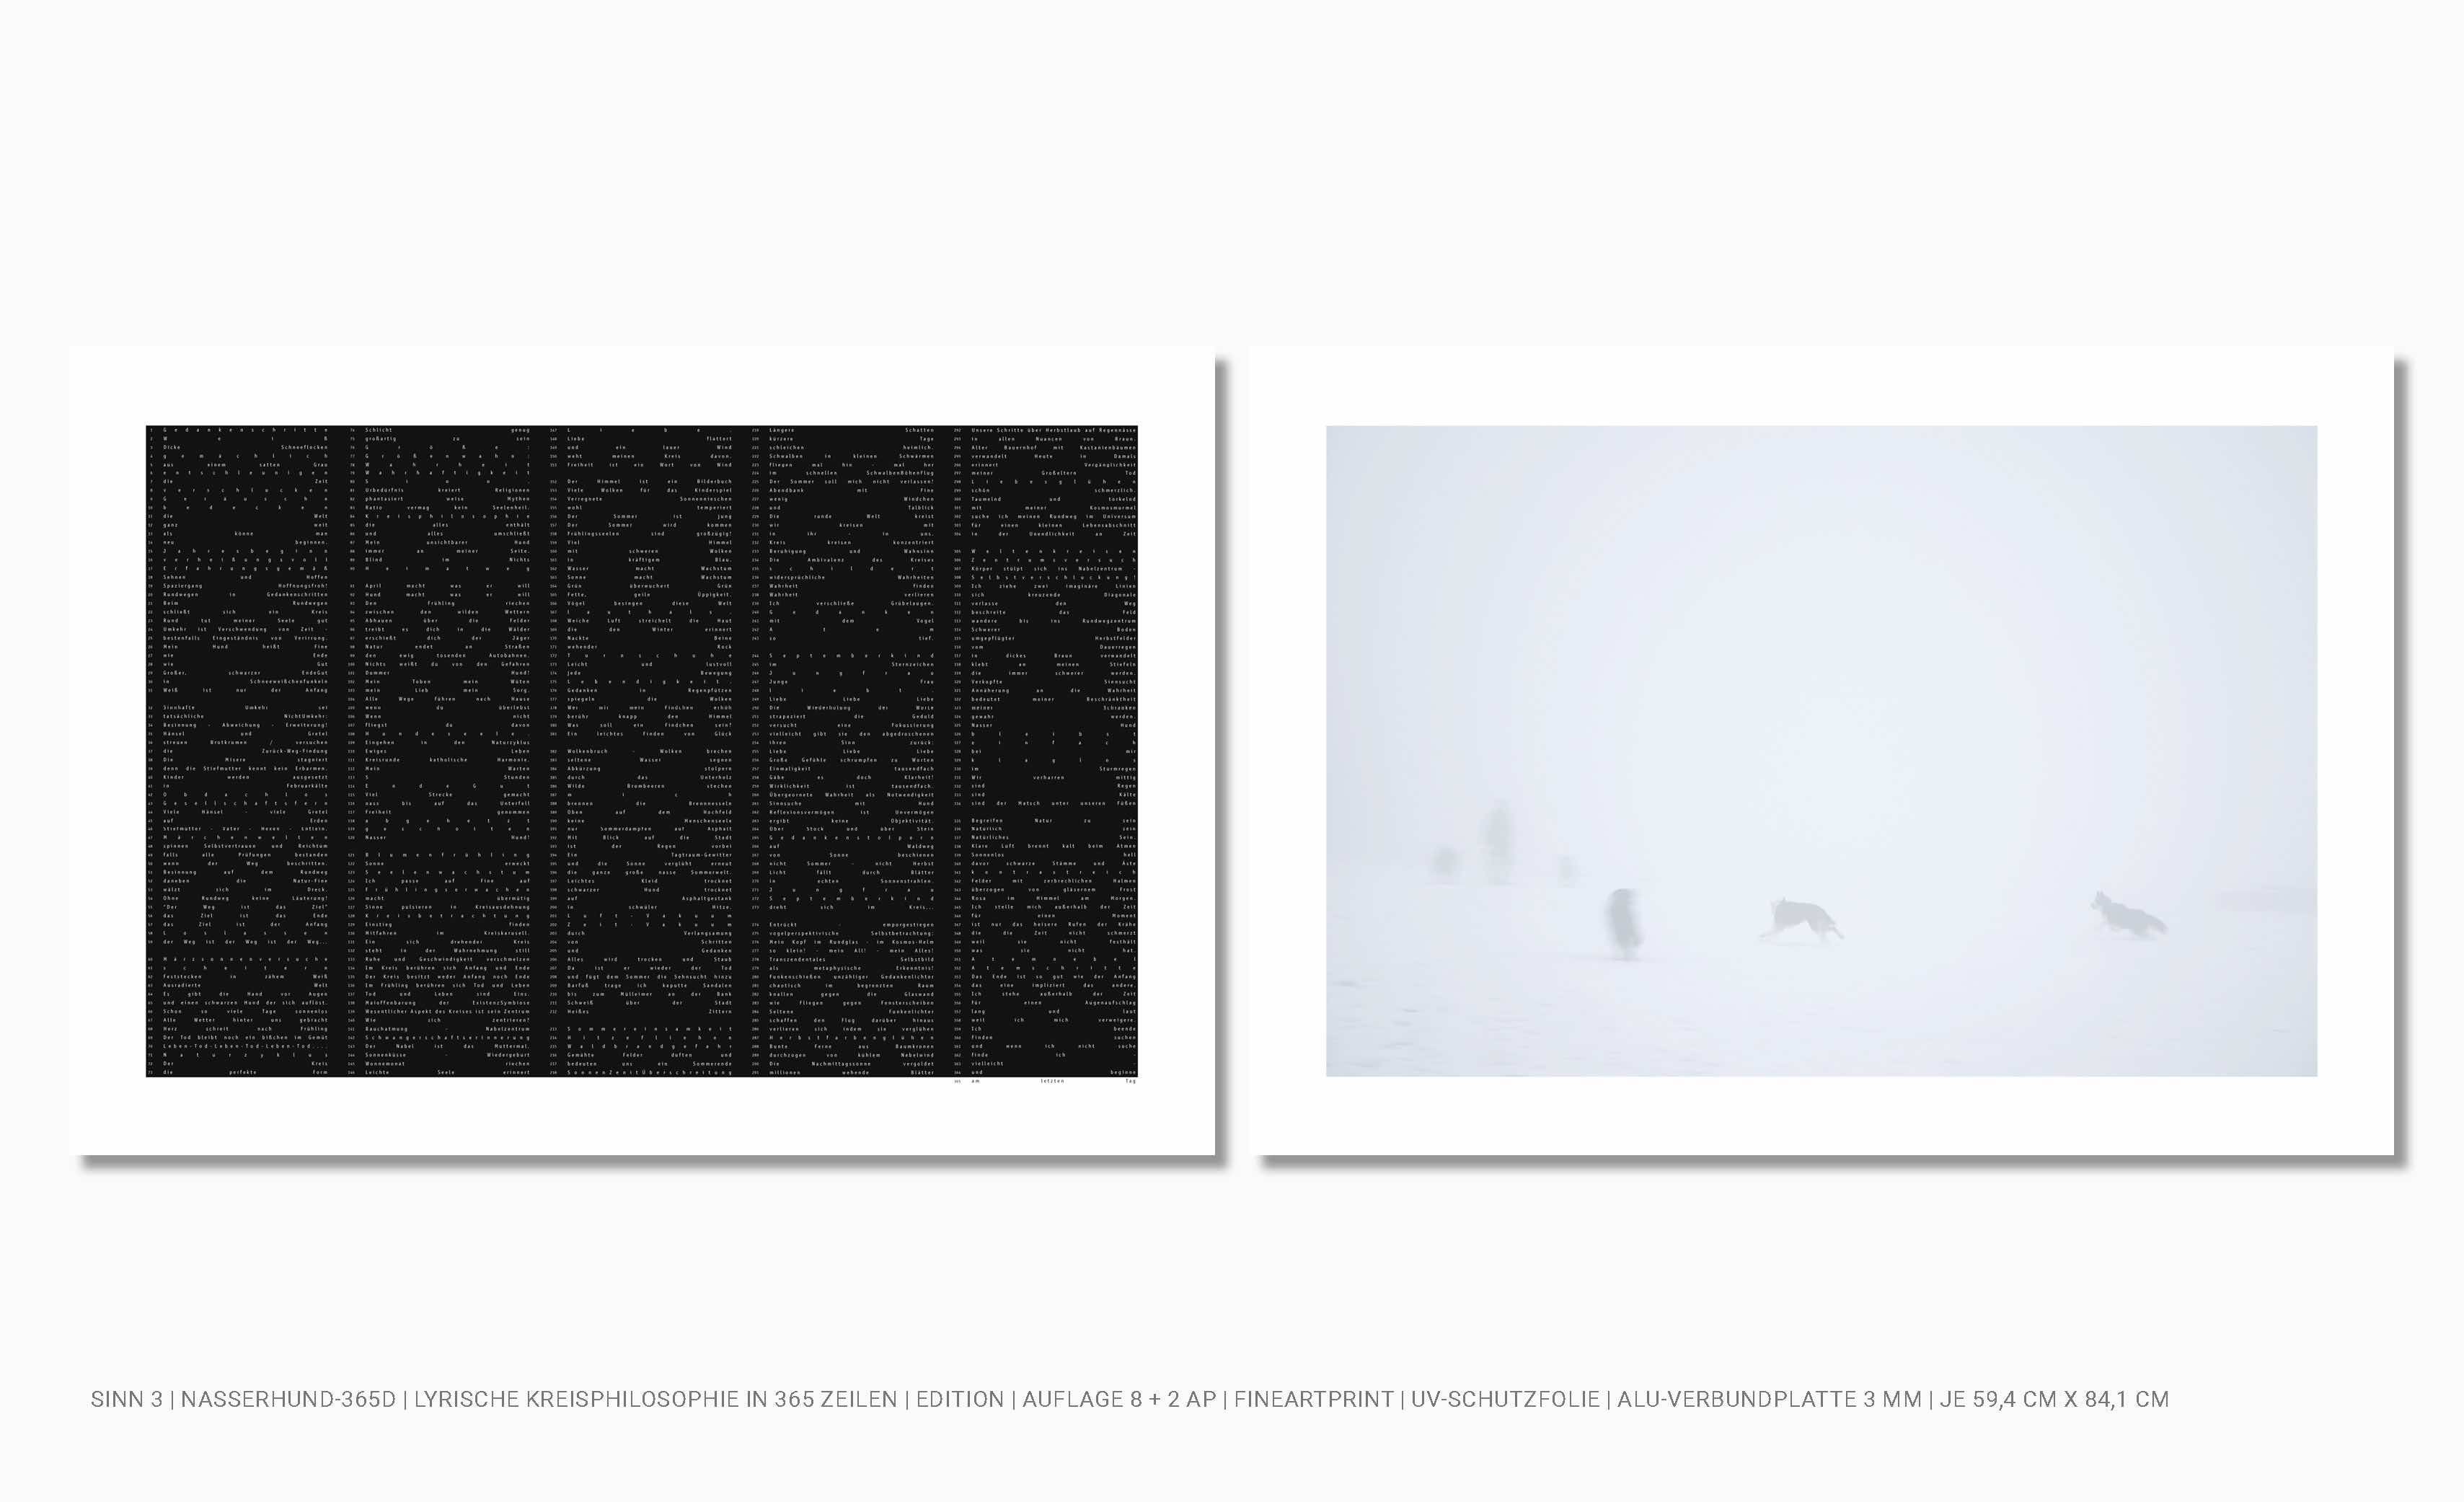 Fineartprint auf Alu-Verbundplatten Lyrik-Exponat und Fotografie von Hunden im Schnee